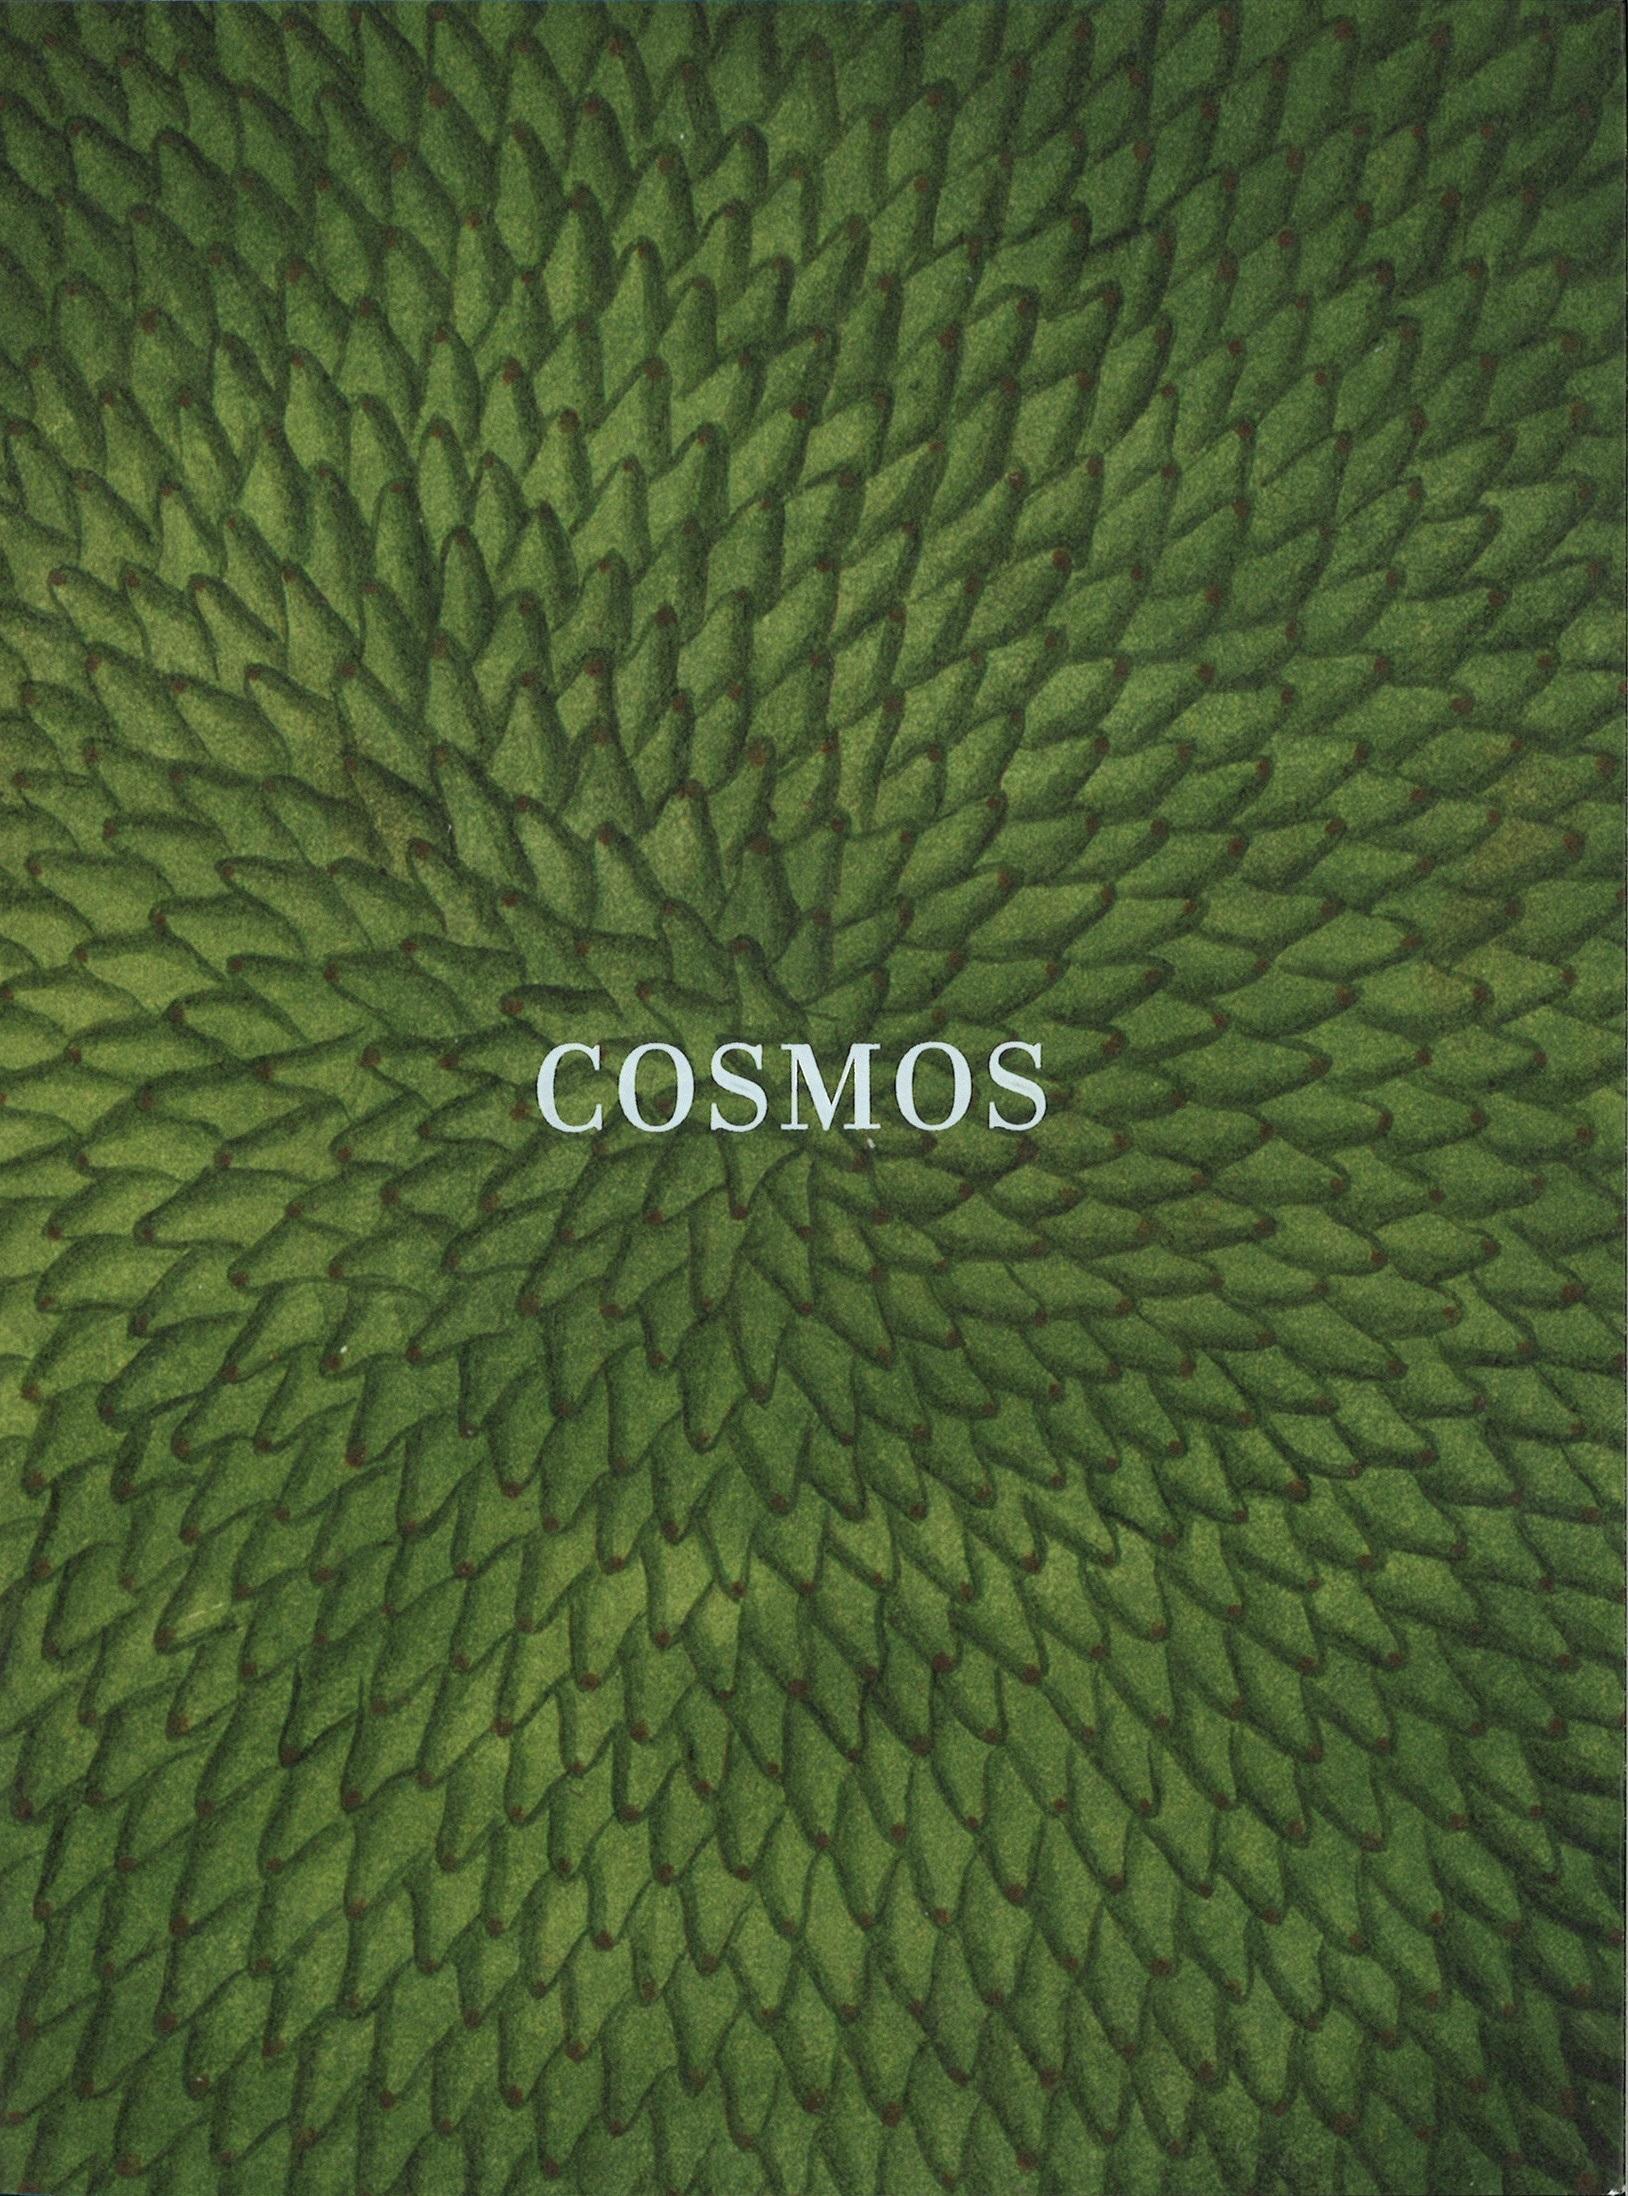 Cosmos "Catálogo Exposición Biblioteca Nacional 2018 AGOTADO EJEMPLAR NUEVO". 